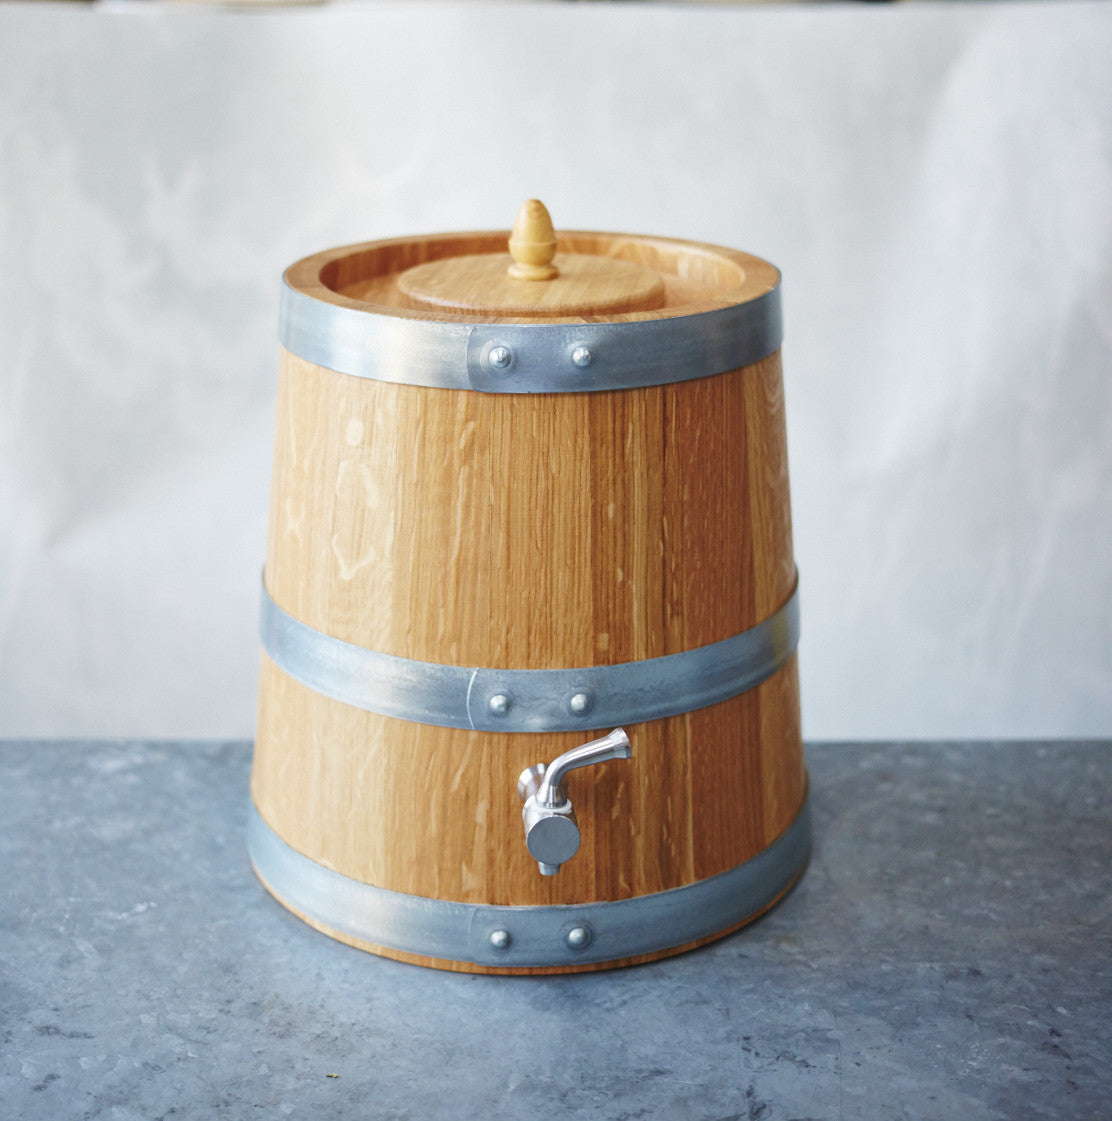 French Oak Wooden Vinegar Barrel - 3 litre - Vinegar Shed